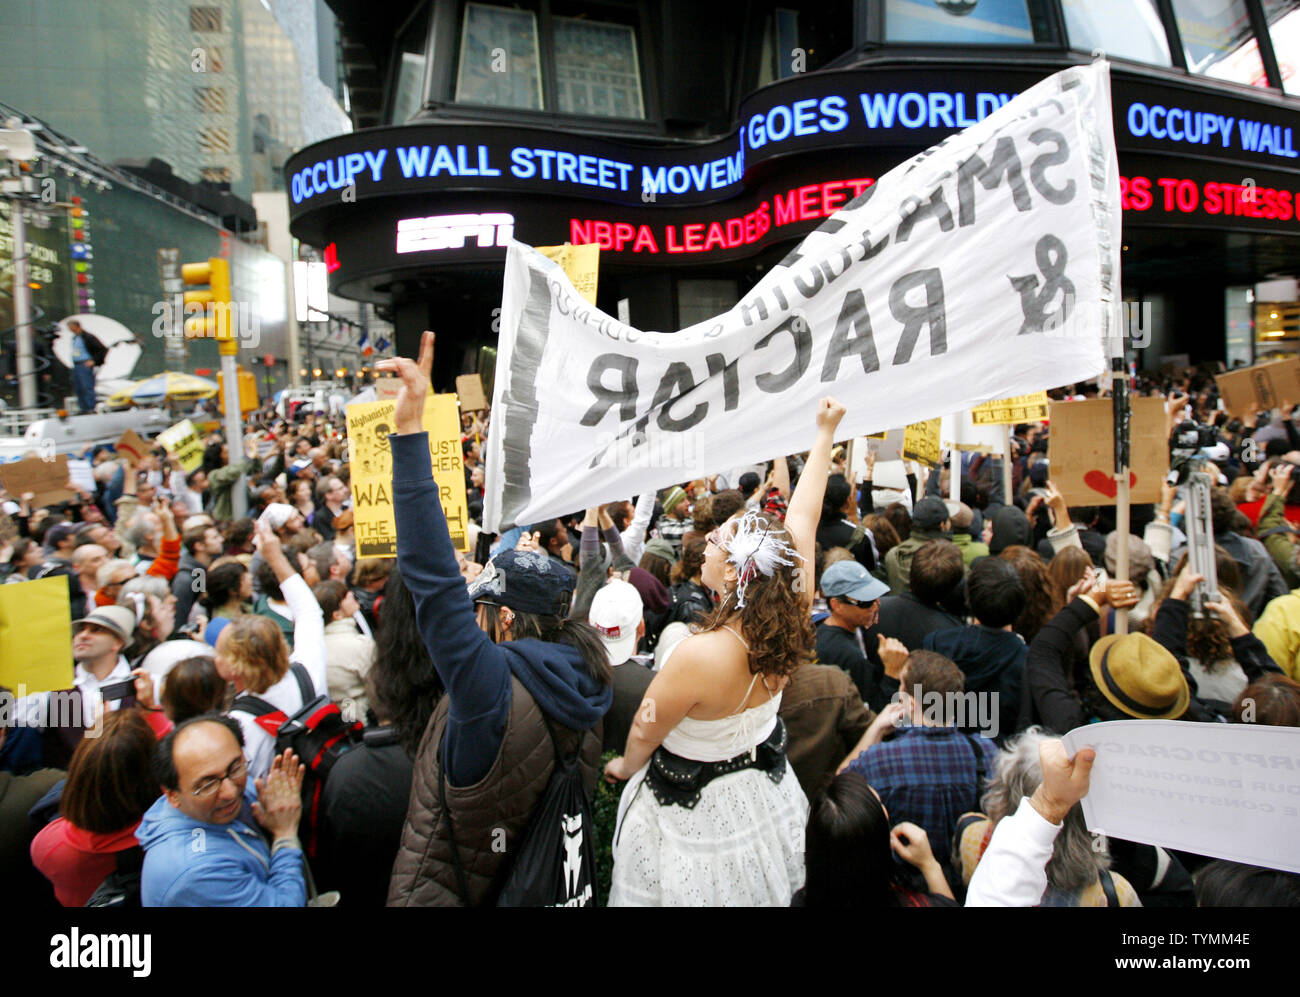 Les news de ramper à l'ABC studios marquis donne mention de la manifestation occupons Wall Street comme des milliers de personnes se rassemblent à Time Square pour appeler à la fin de la cupidité des entreprises le 15 octobre 2011 à New York. Des manifestations similaires ont lieu aujourd'hui à travers le monde alors que les manifestants appellent une réforme dans les politiques du capitalisme. UPI/Monika Graff Banque D'Images